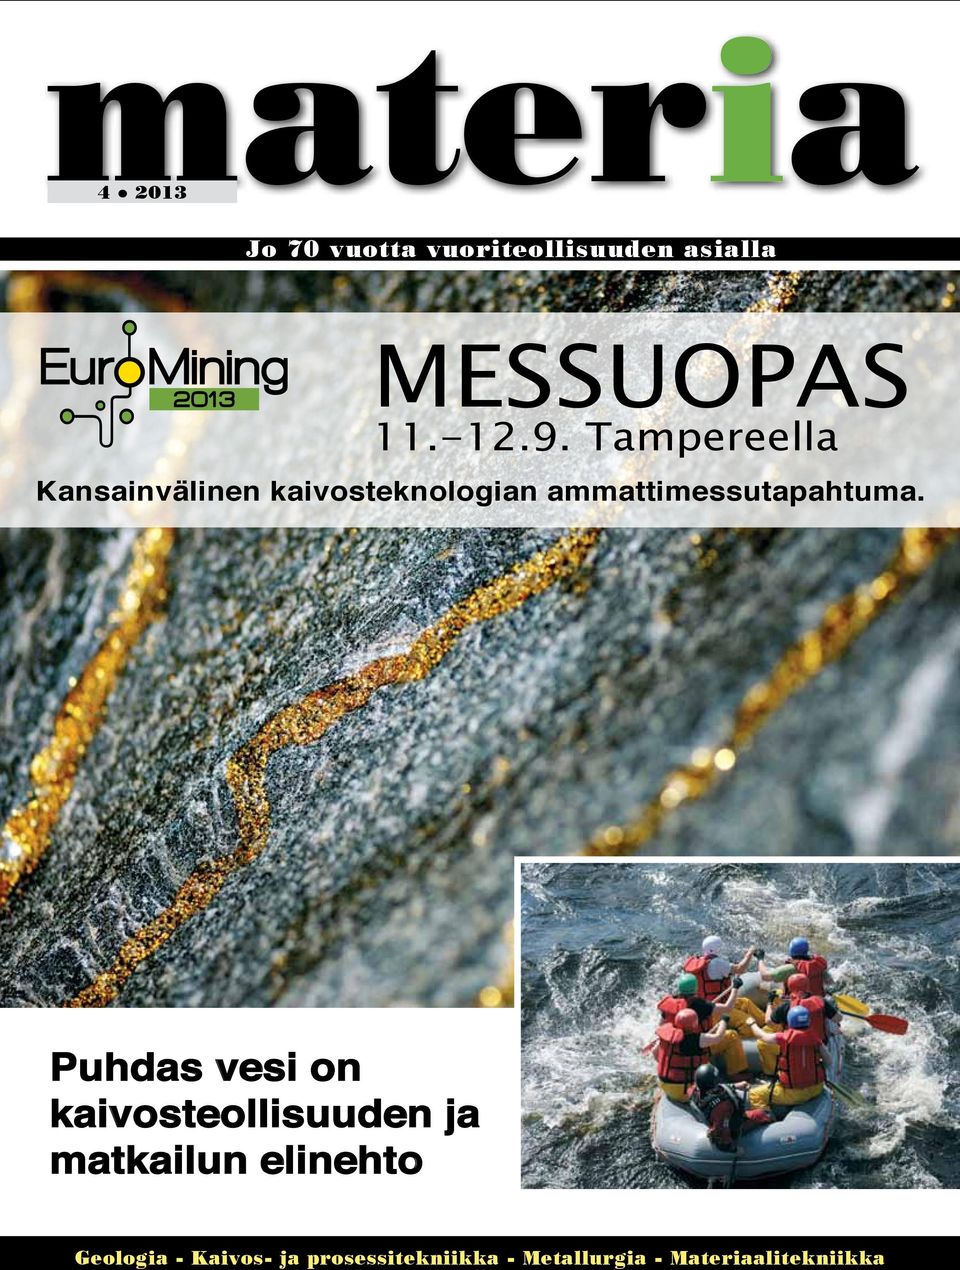 Tampereella Kansainvälinen kaivosteknologian ammattimessutapahtuma.